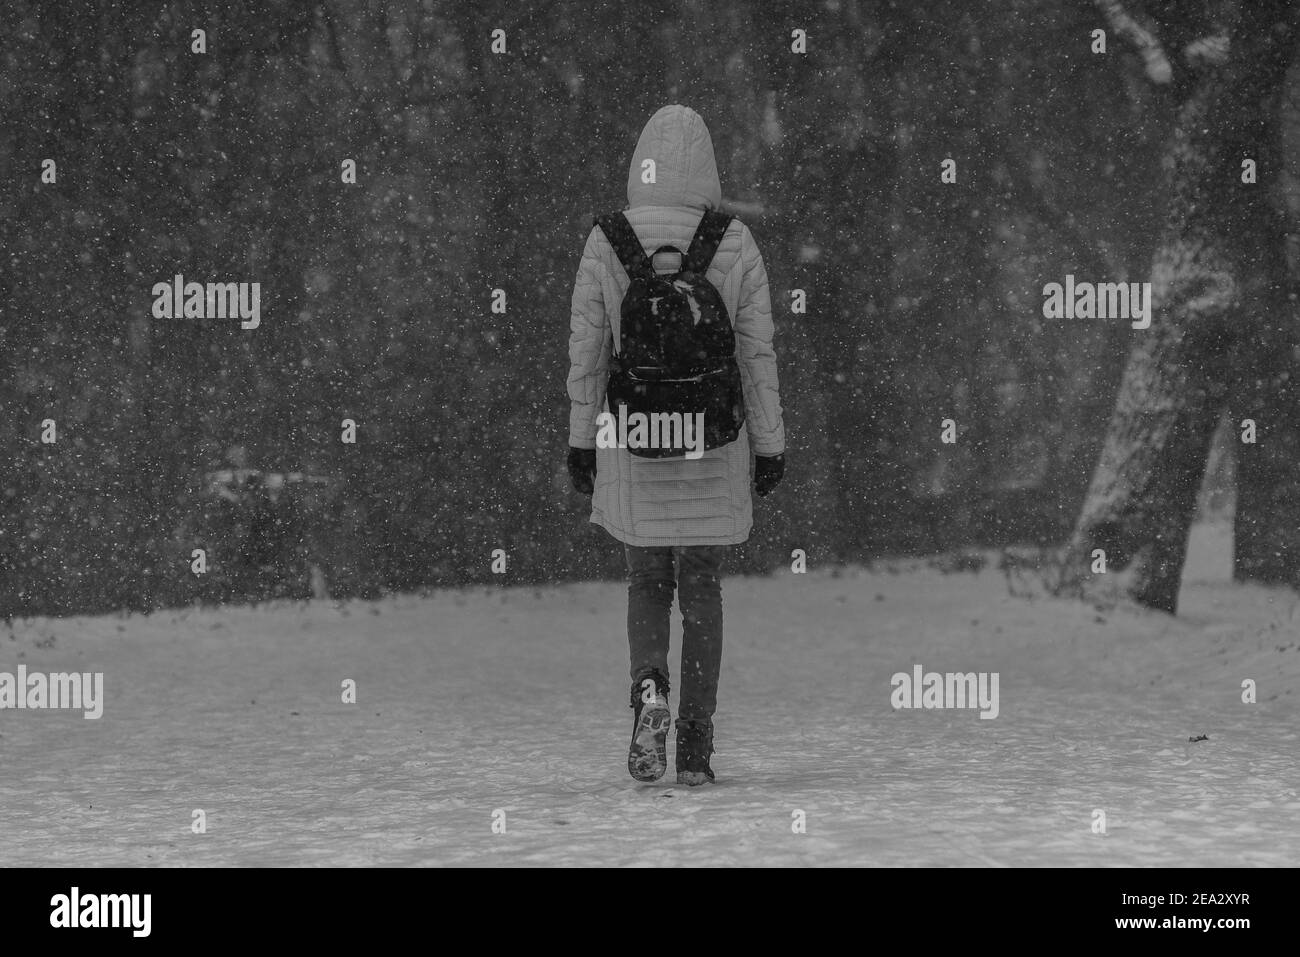 Une jeune femme marchant dans la tempête de neige, photographiée de l'arrière-plan, UNE femme marchant dans la neige, une forêt en arrière-plan, une photo en noir et blanc Banque D'Images